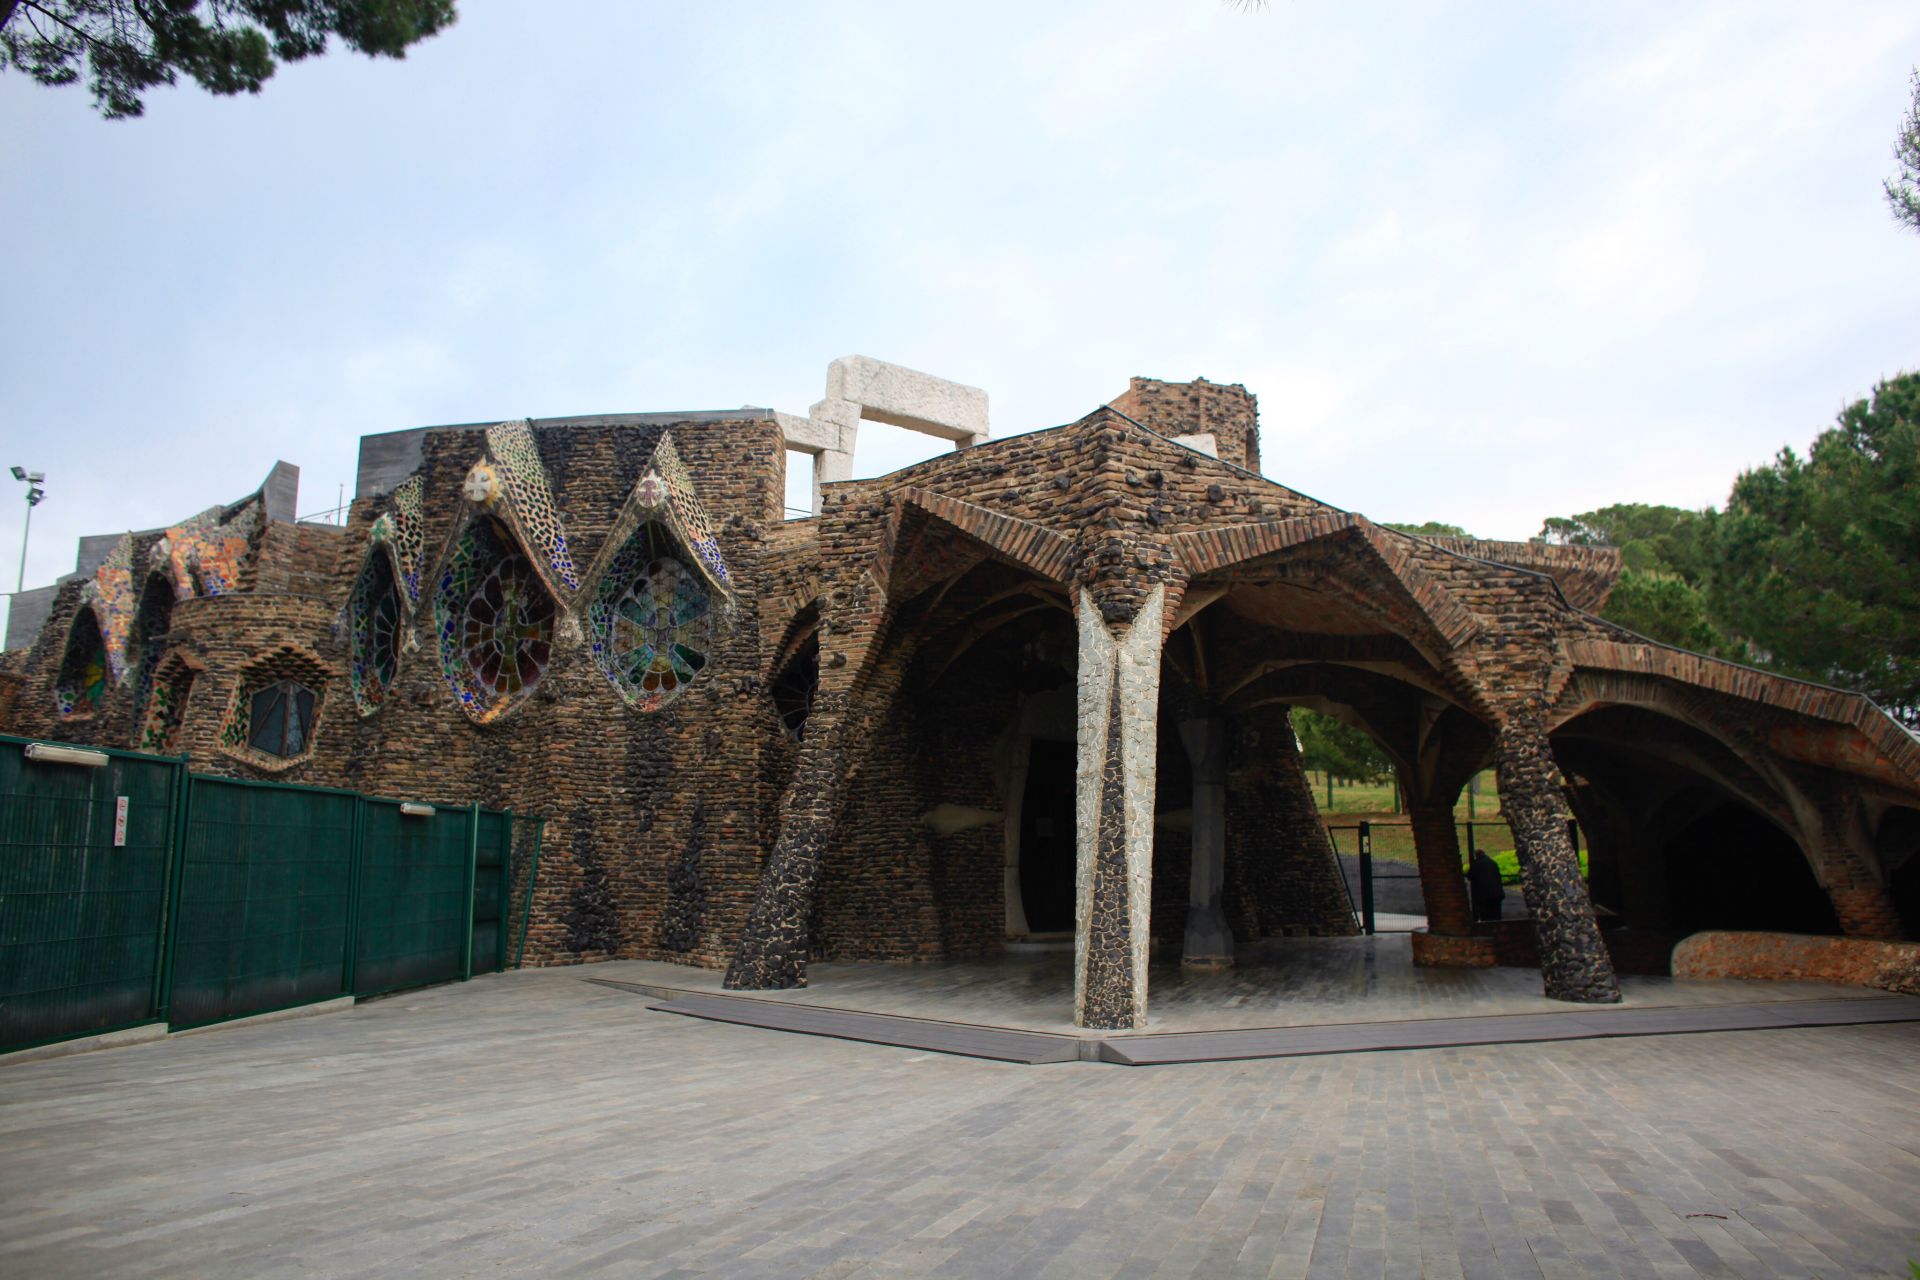 バルセロナ郊外にあるアントニ・ガウディ設計の「コロニア・グエル教会」を訪ねる。 oh! my ブログ